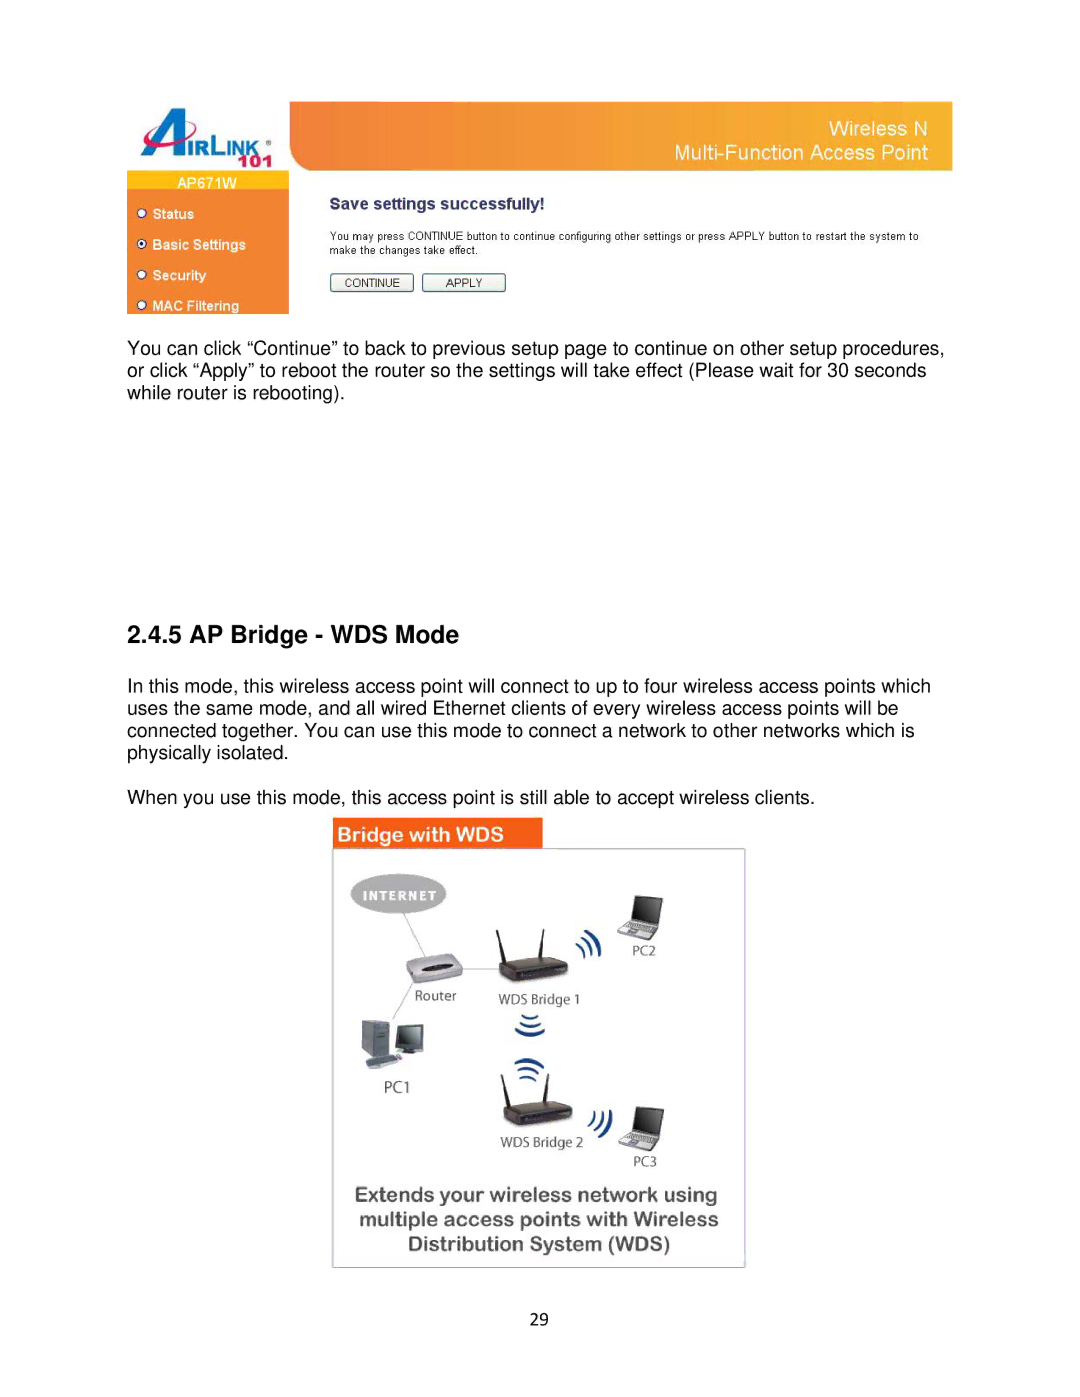 Airlink101 N300 user manual AP Bridge WDS Mode 